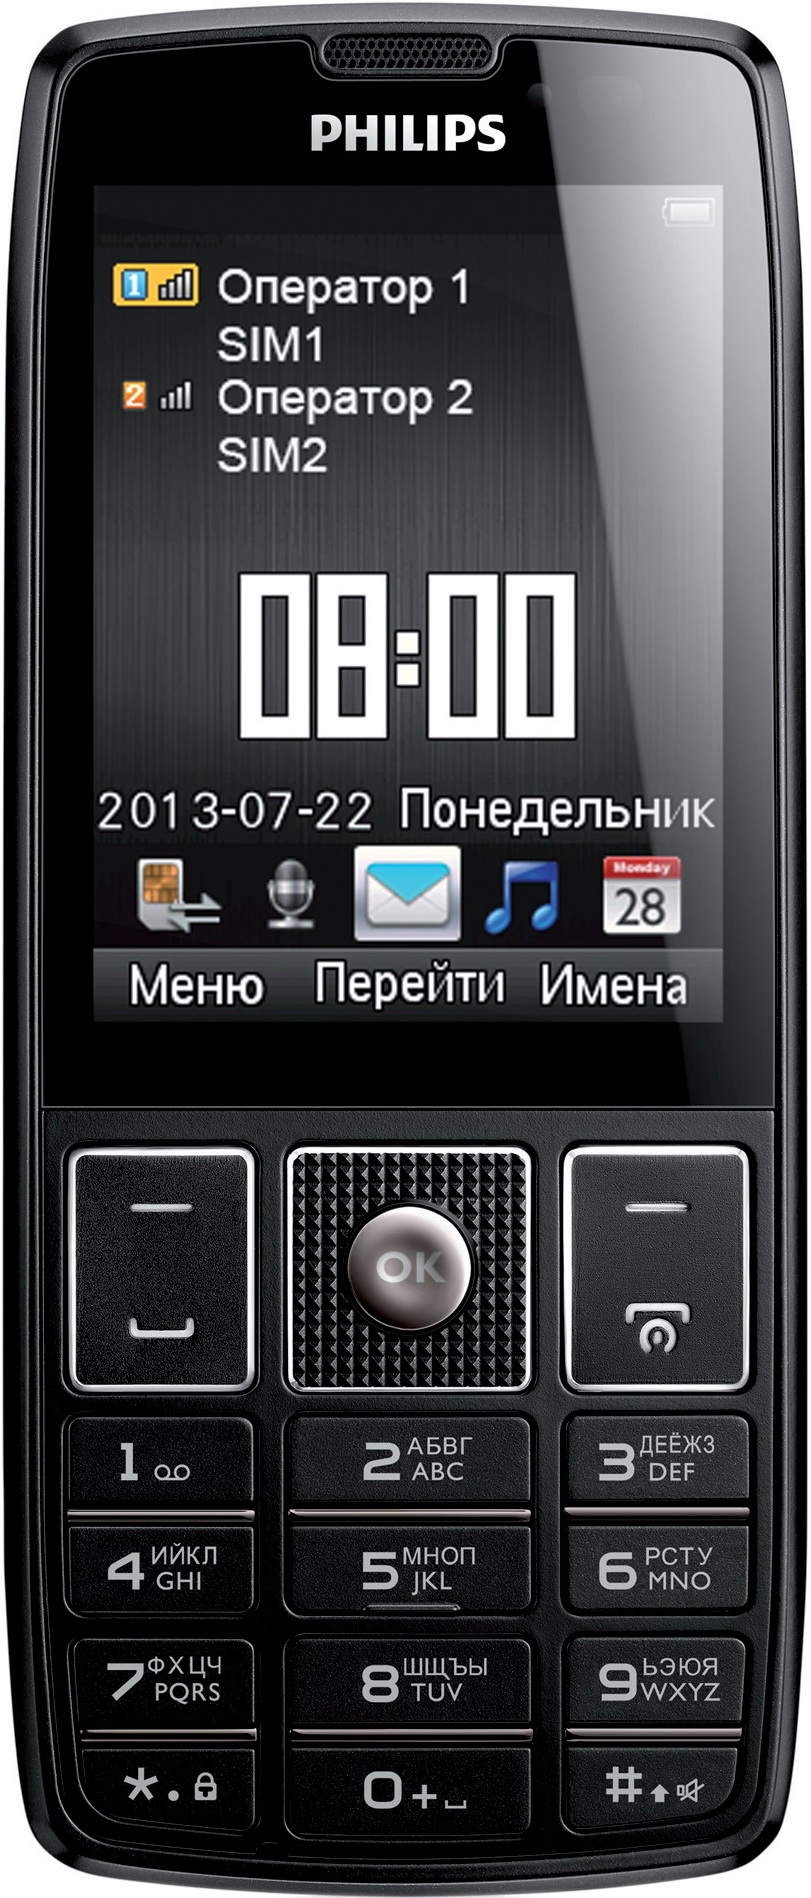 Xenium x5500. Philips Xenium x5500. Телефон Philips Xenium x5500. Сотовый телефон Филипс 5500. Philips Xenium 5500.